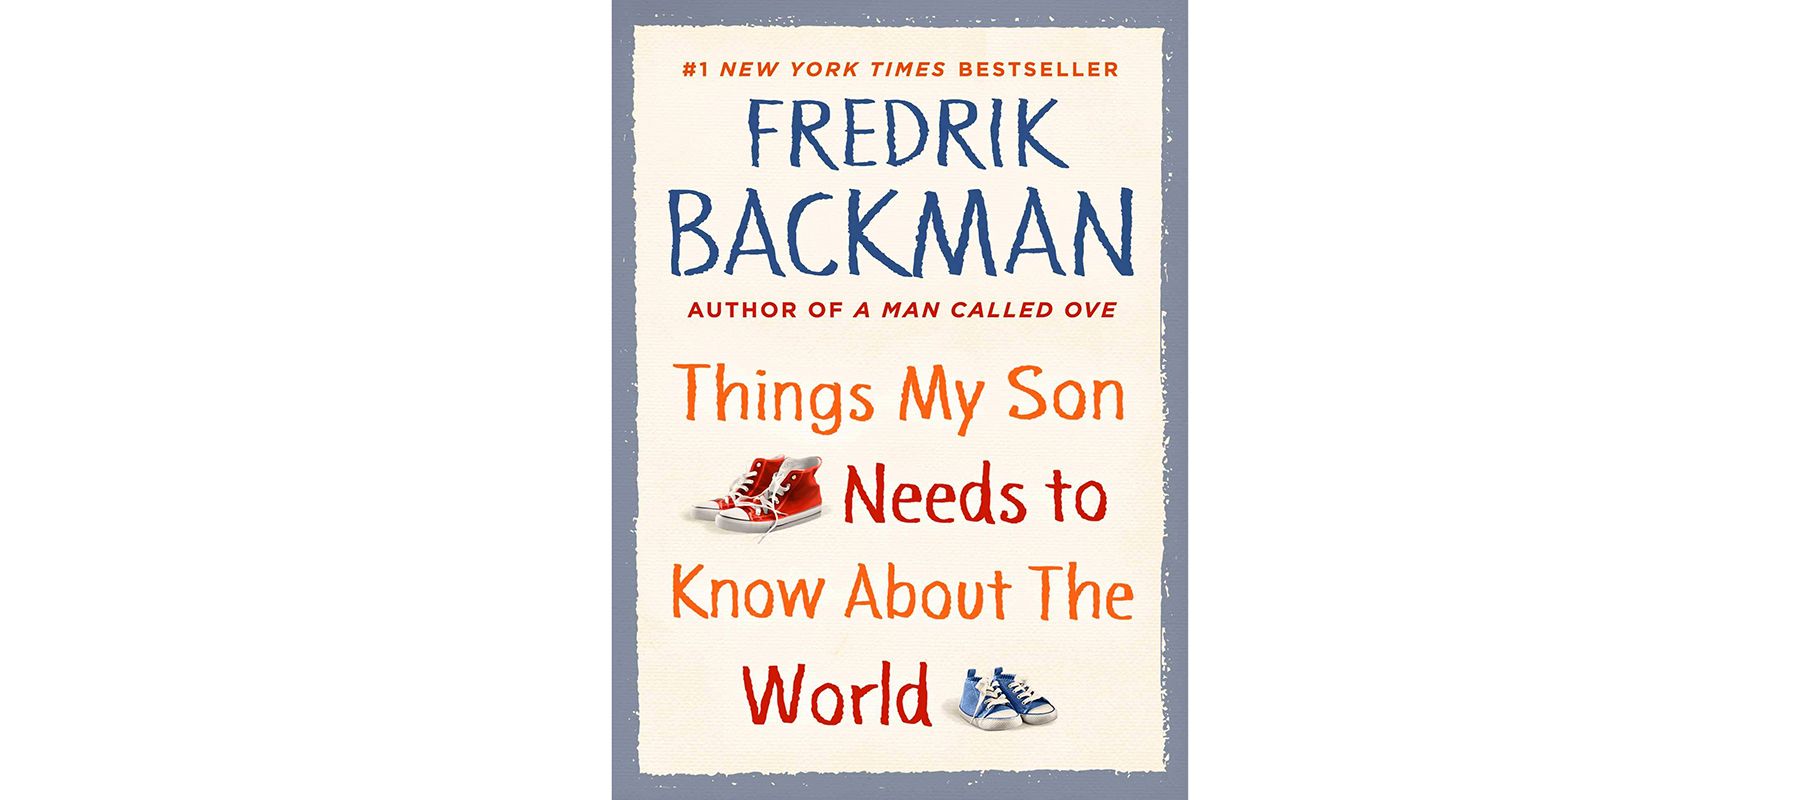 Насловна ствар коју мој син треба да зна о свету, аутор Фредрик Бацкман